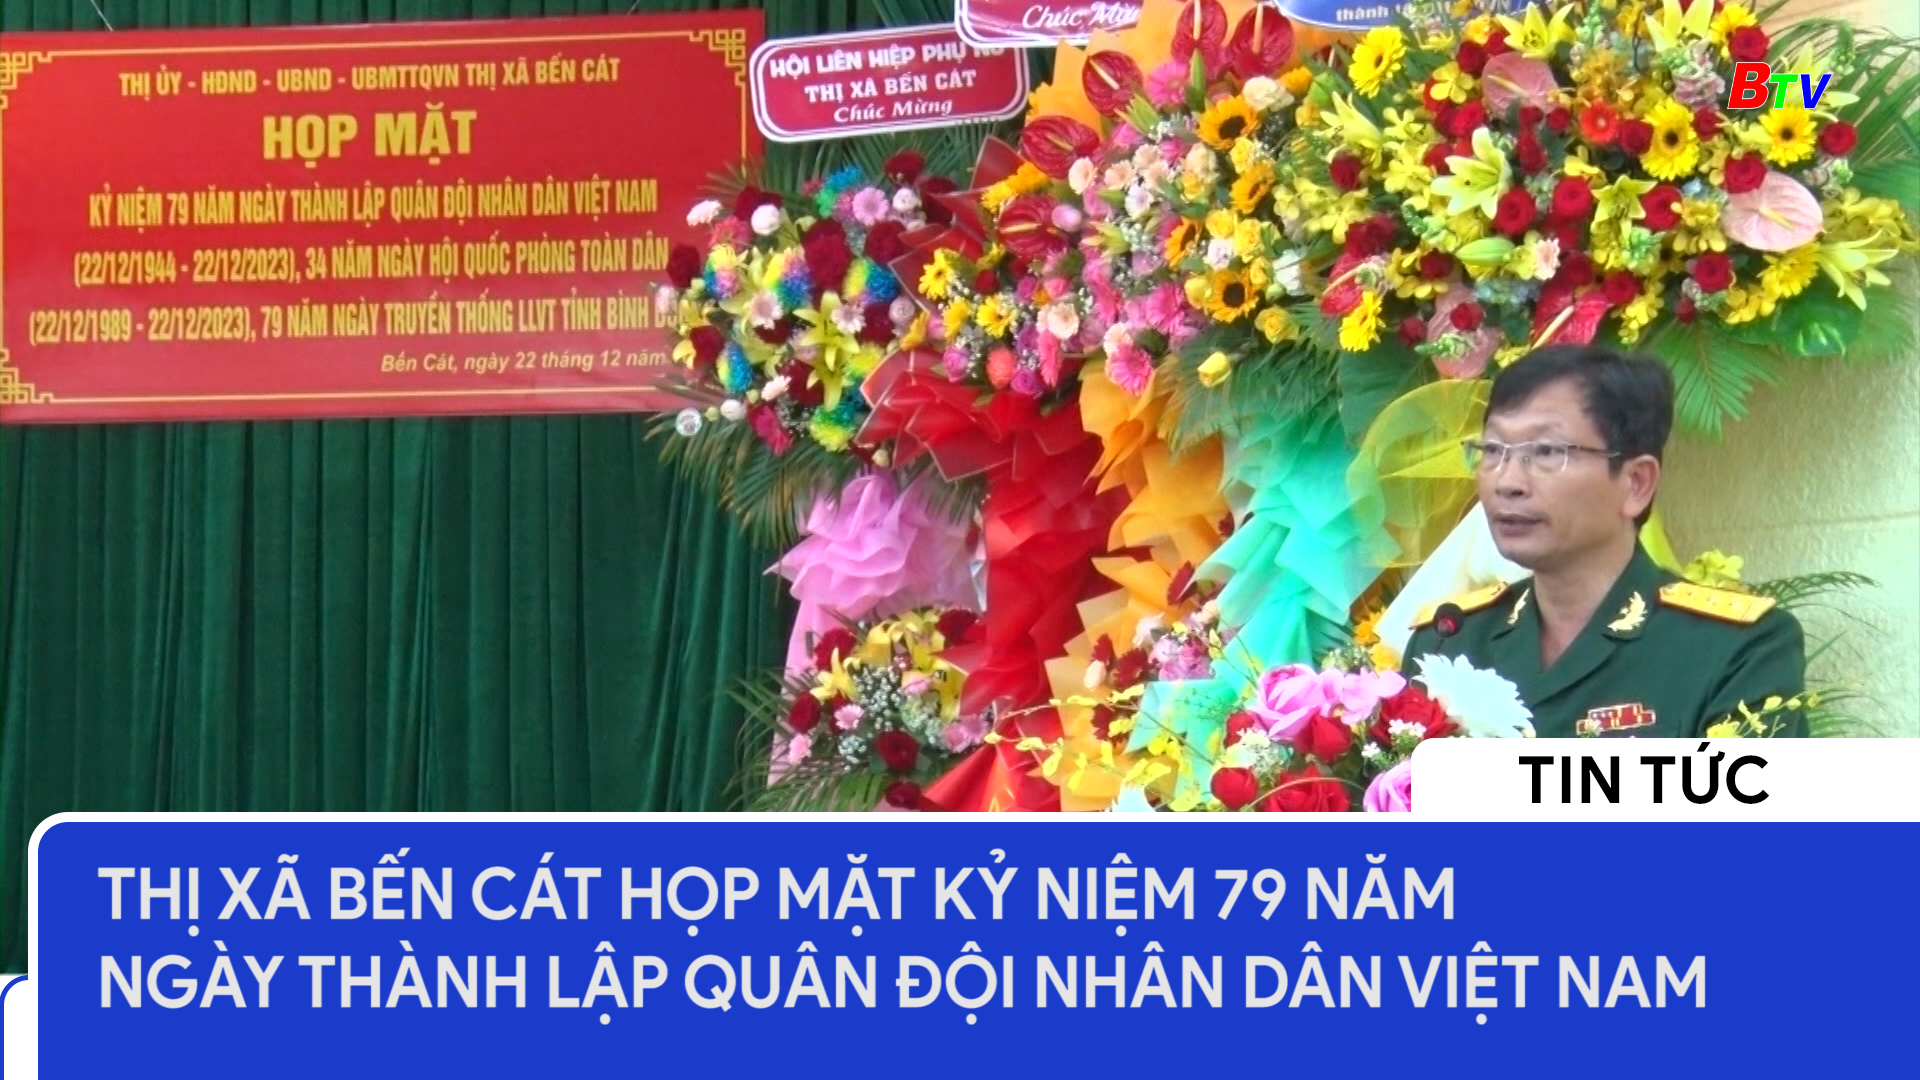 Thị xã Bến Cát (Bình Dương) họp mặt kỷ niệm 79 năm Ngày thành lập Quân đội nhân dân Việt Nam	